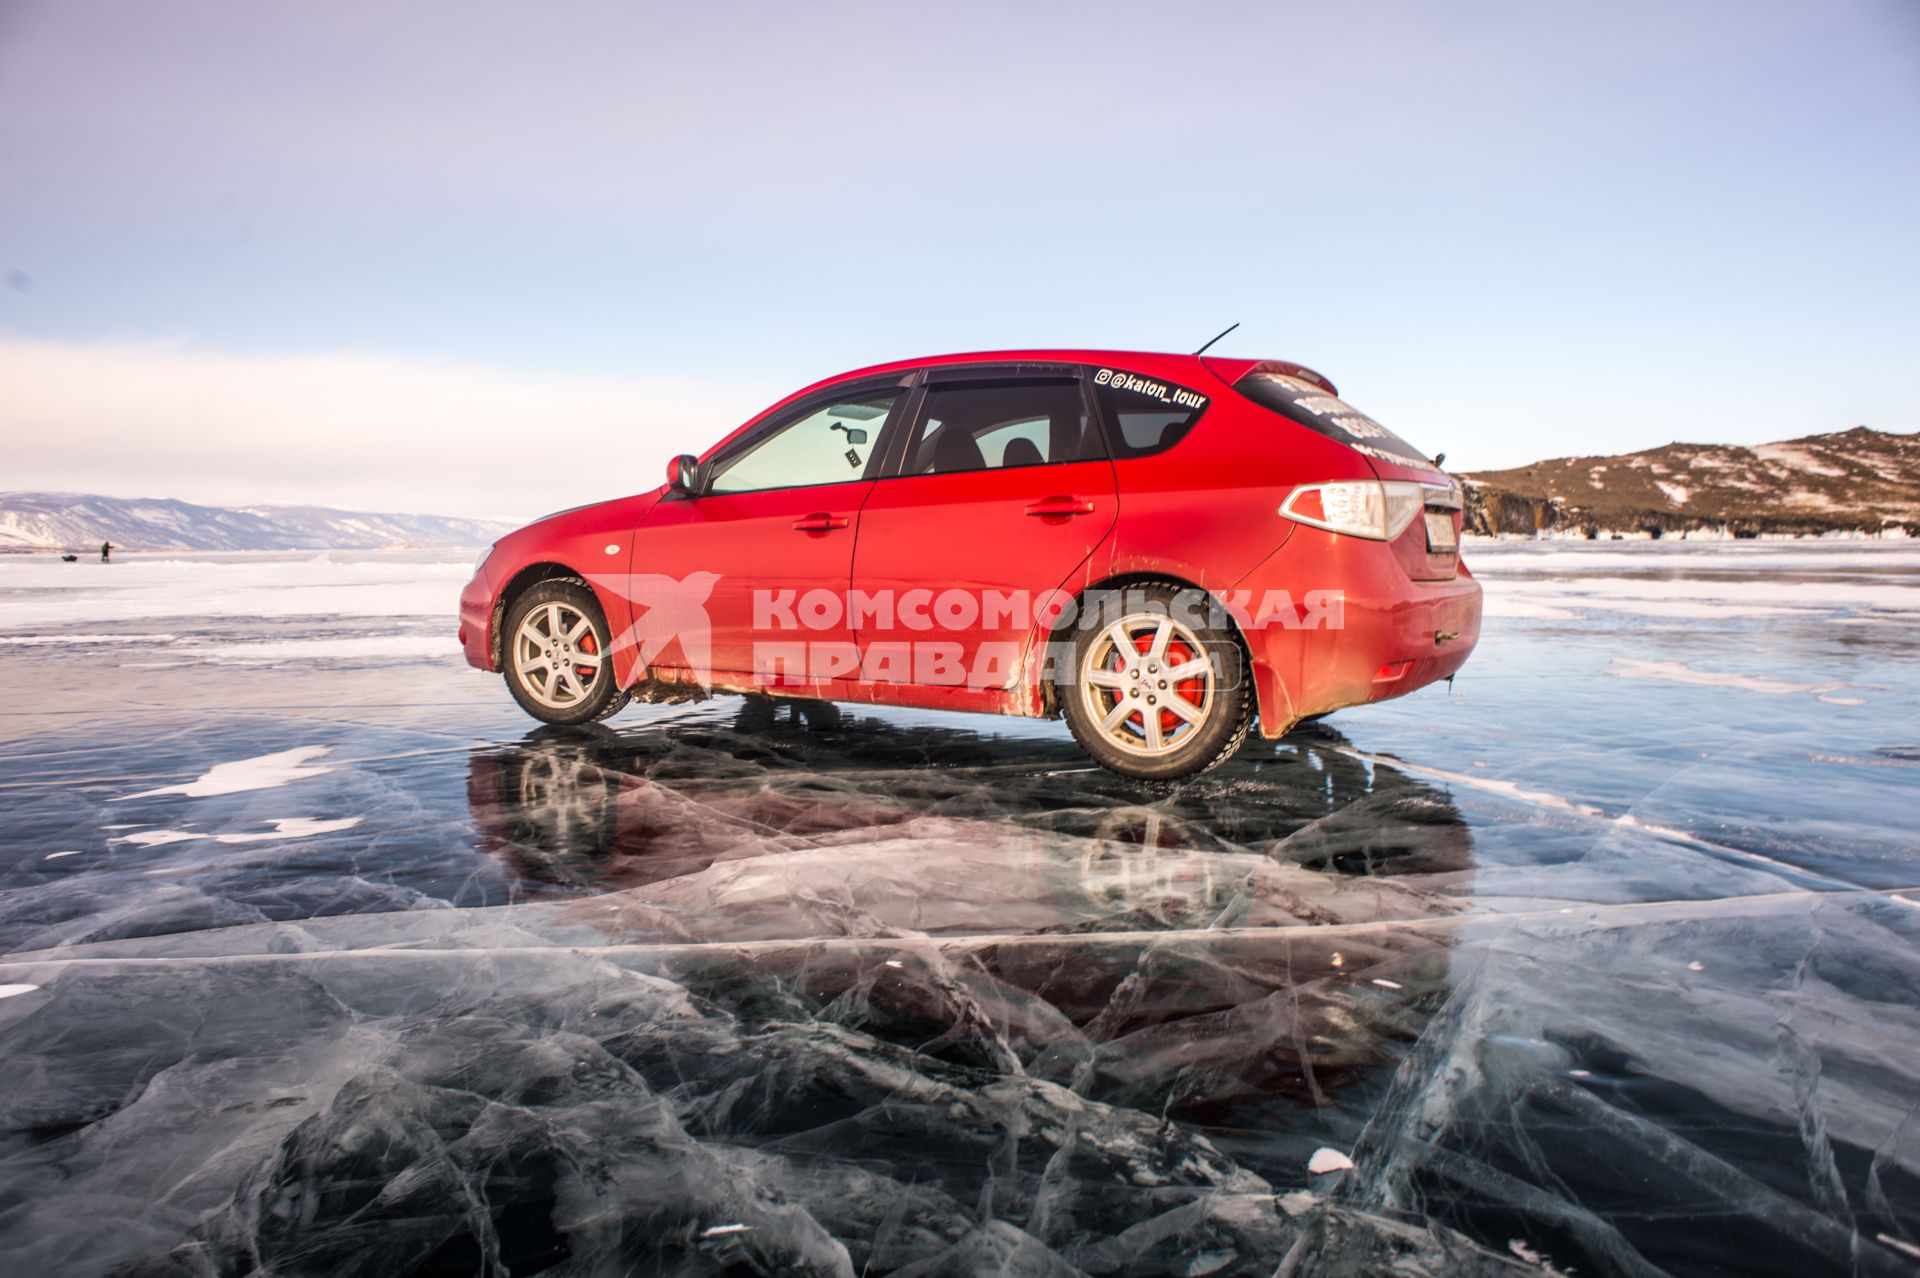 Иркутская область, озеро Байкал.  Машина  едет по  льду озера Байкал.